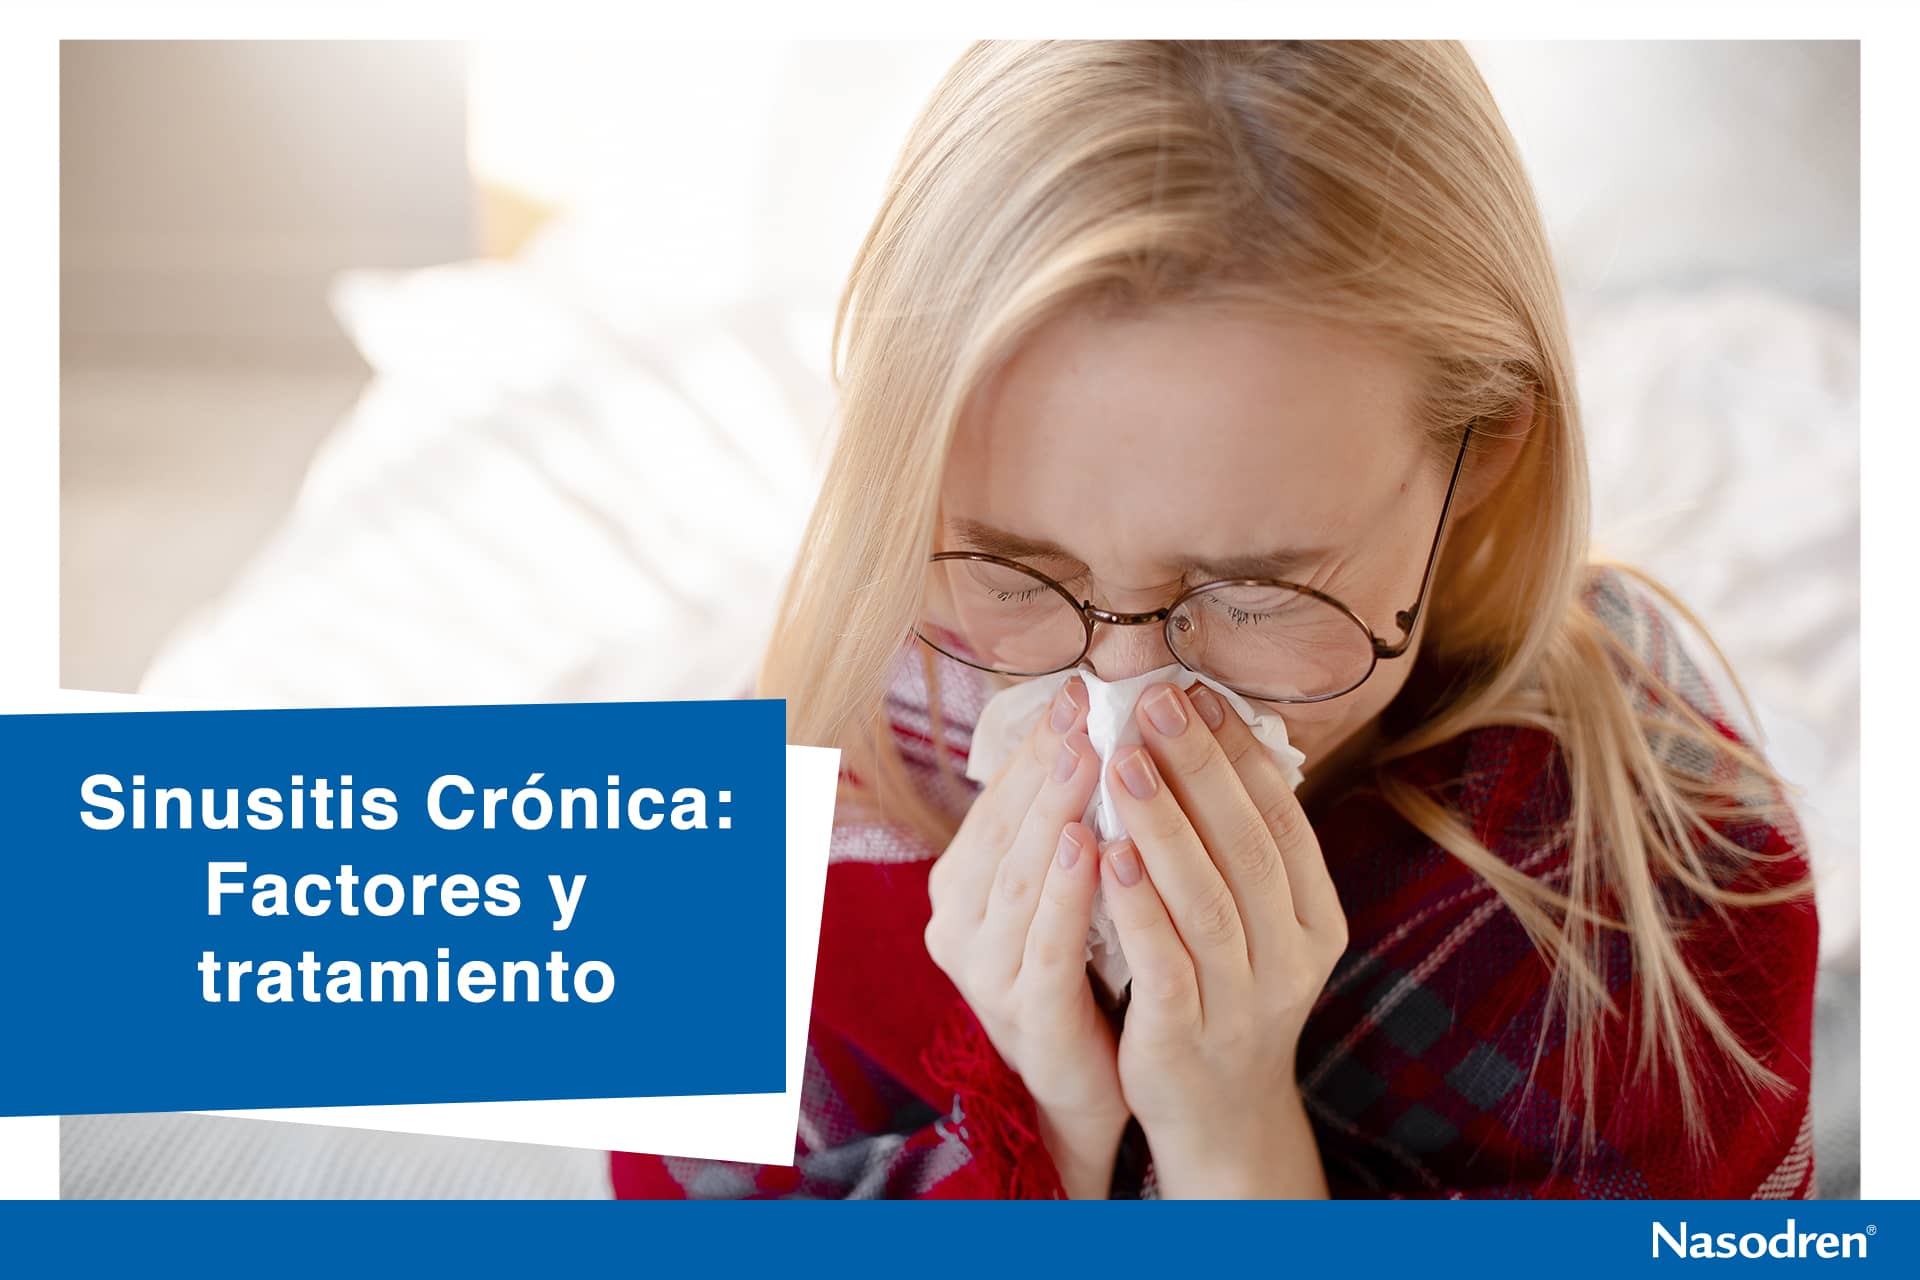 Sinusitis crónica: Factores y tratamiento